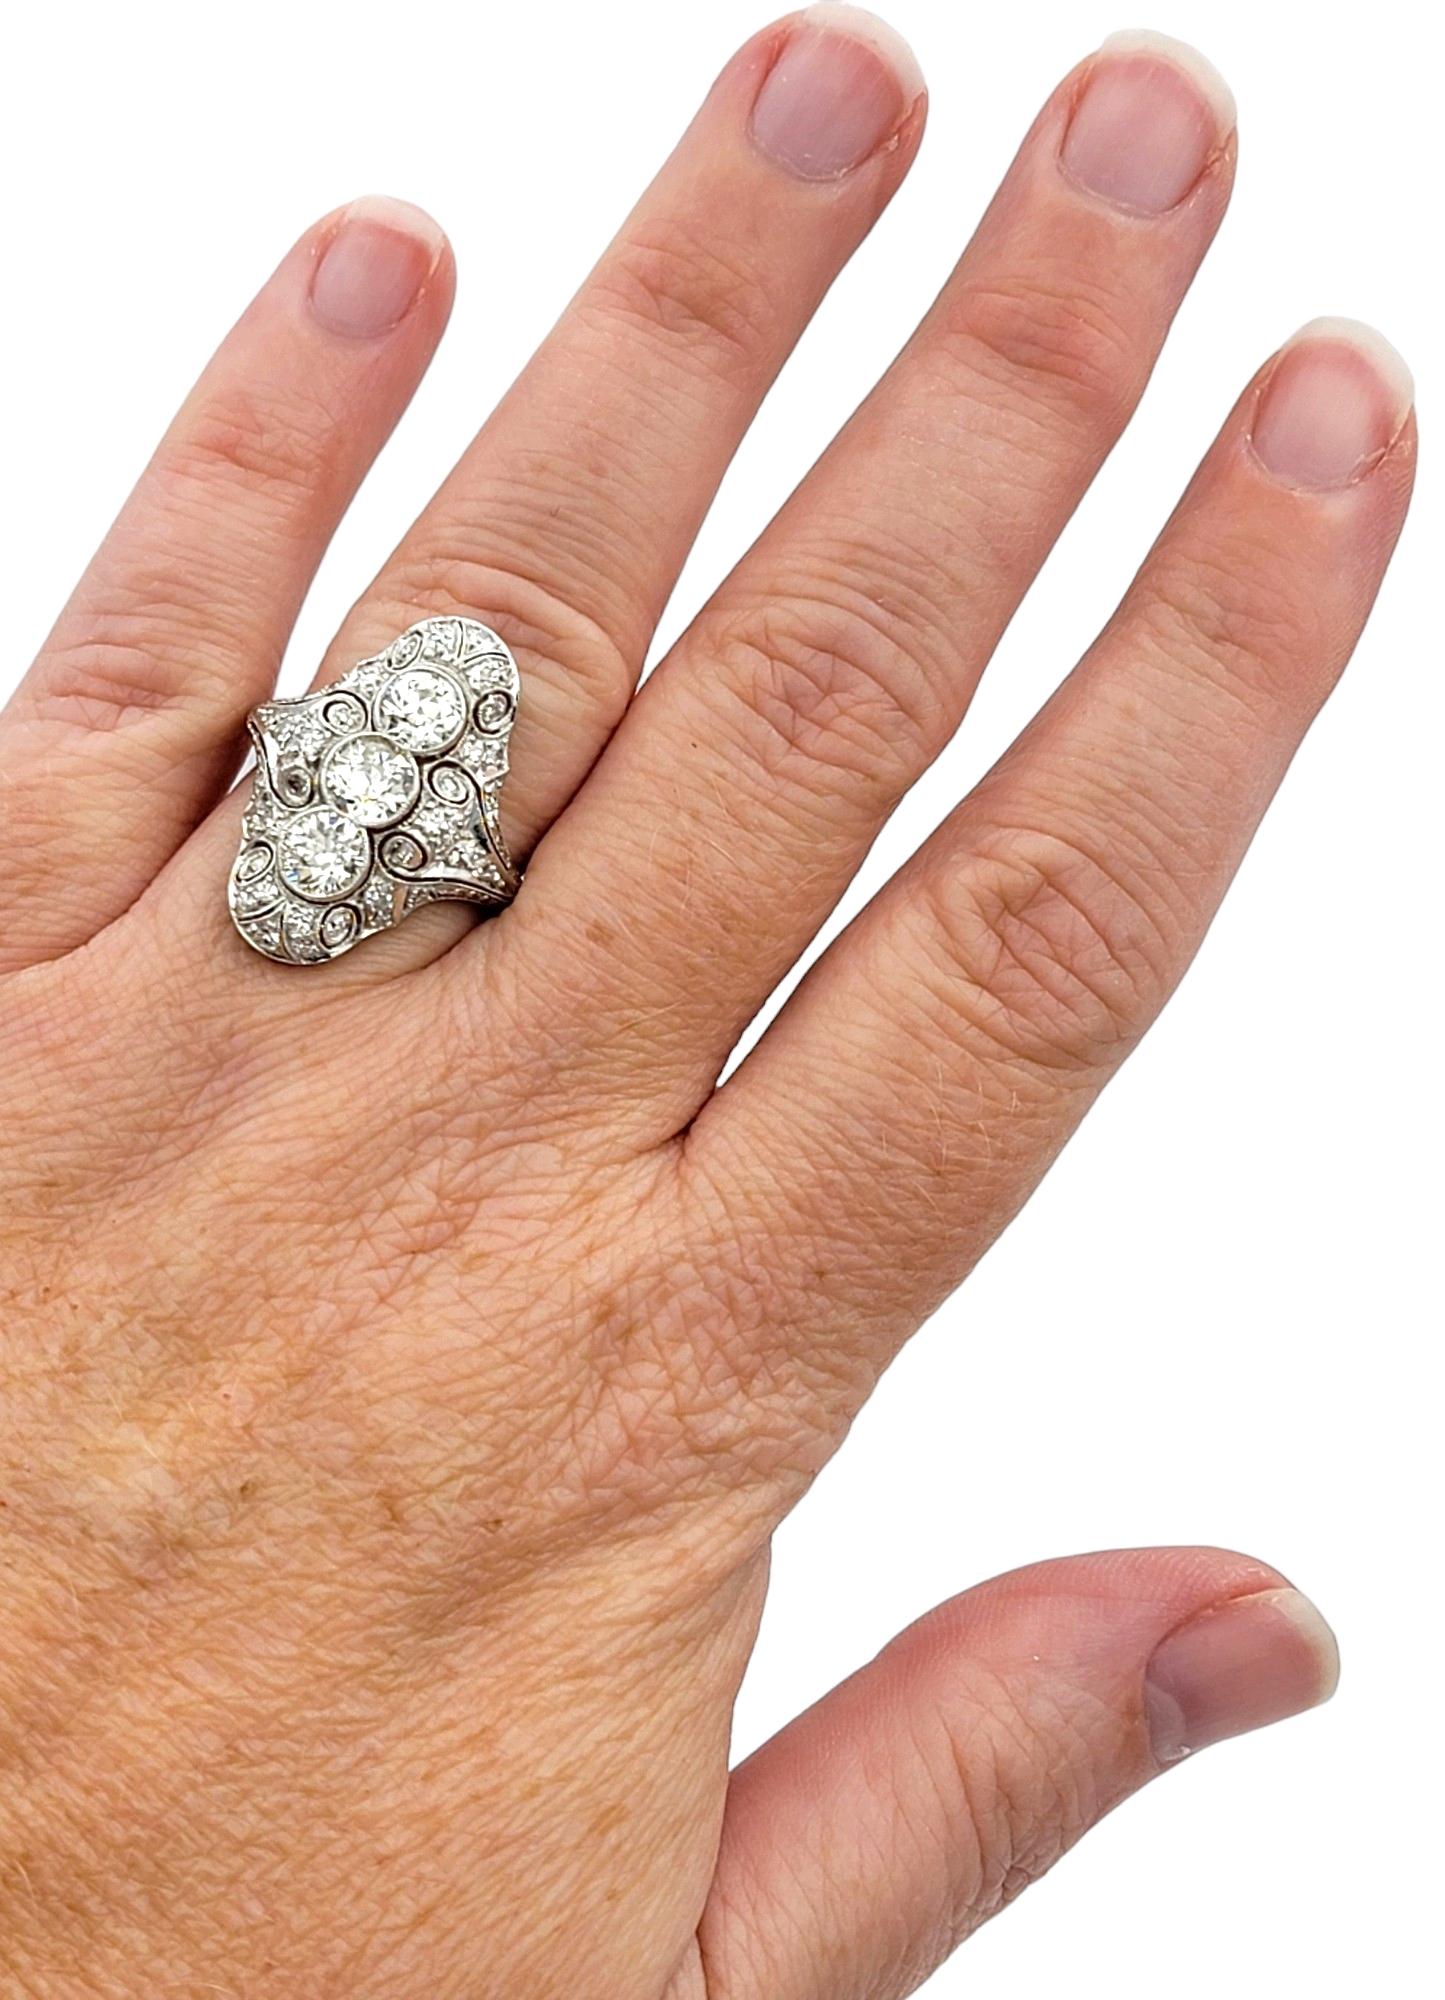 Art Deco Old European Cut Diamond Cocktail Ring with Milgrain Design in Platinum For Sale 2